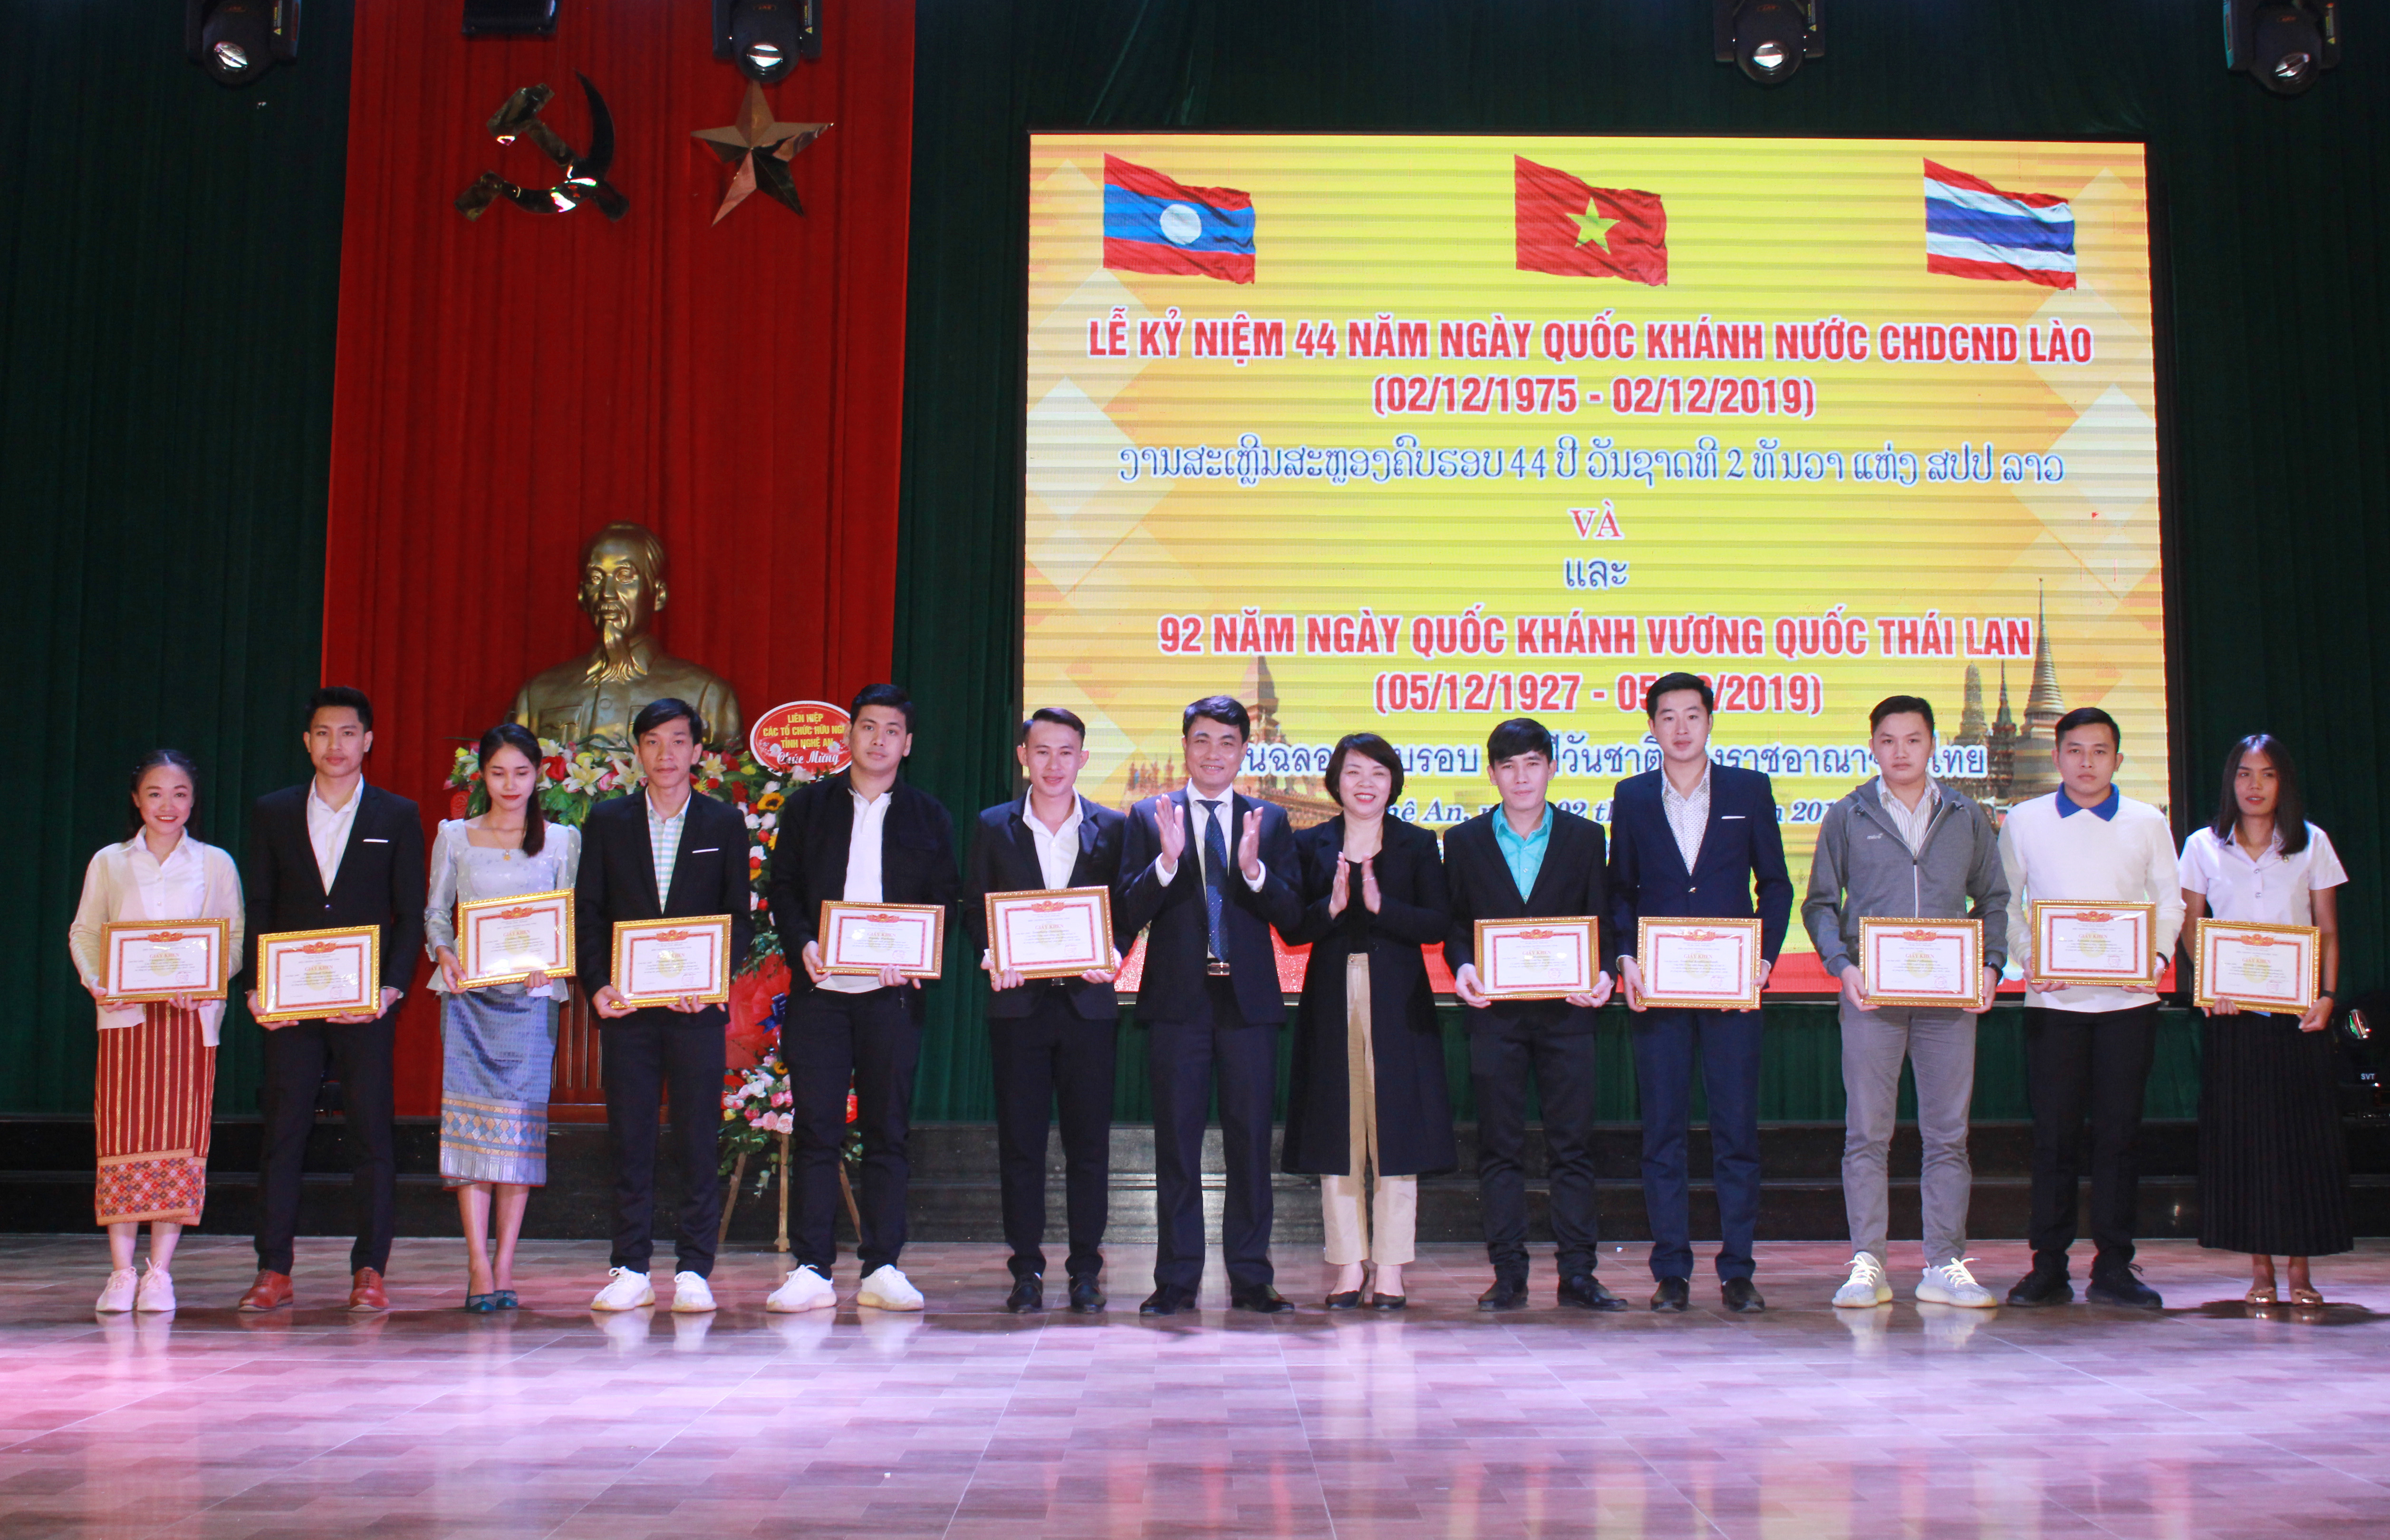 Trường Đại học Vinh trao học bổng và giấy khen cho 11 lưu học sinh Lào - Thái Lan có thành tích tốt trong học tập và rèn luyện. Ảnh: Phương Thúy